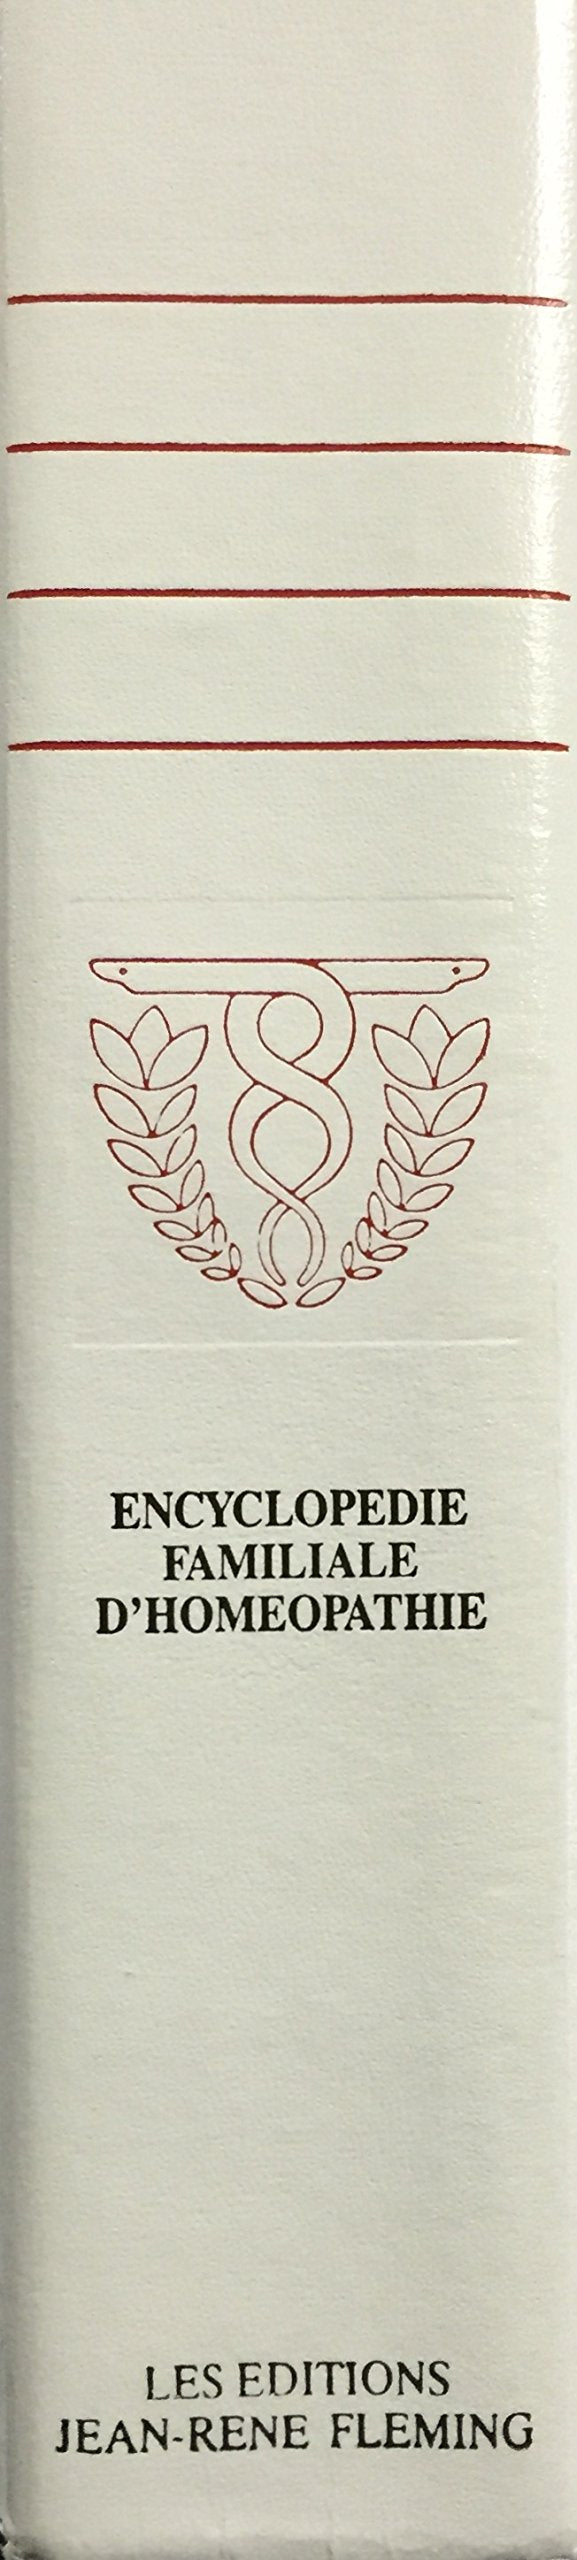 Encyclopédie familiale d'homéopathie